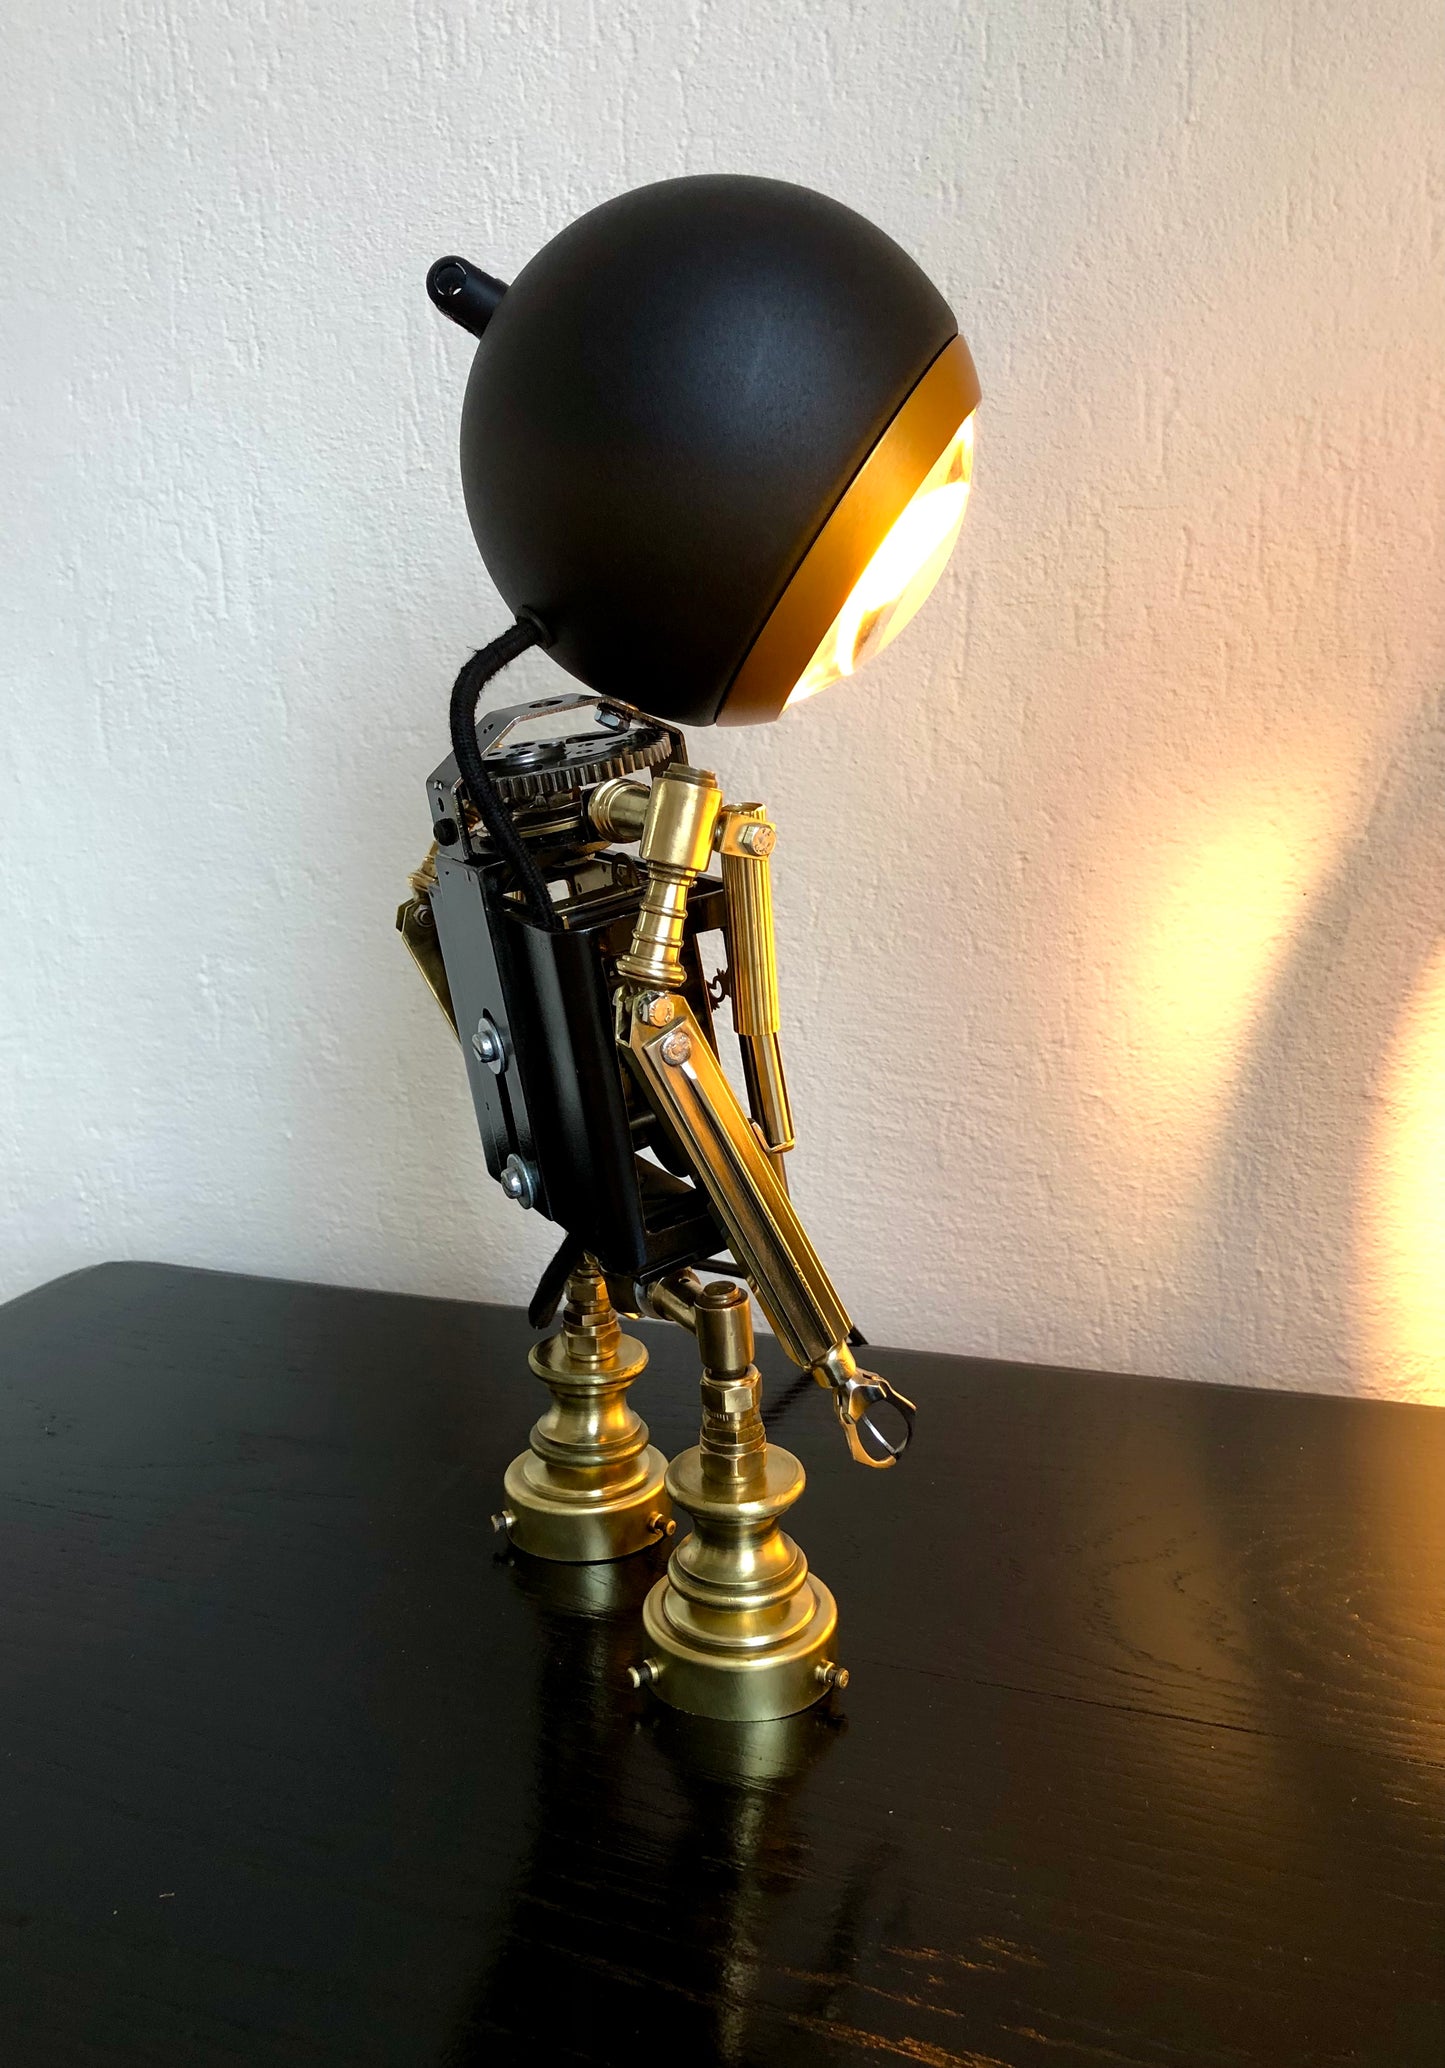 Marvin de depressieve robot lamp